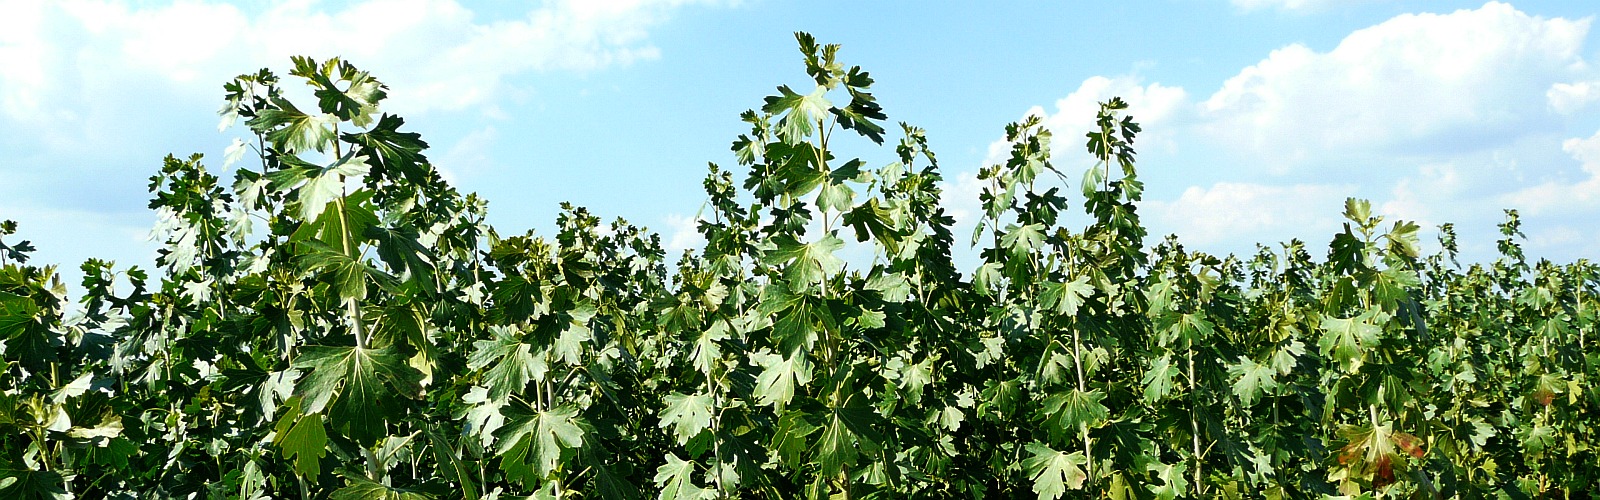 Питомник плодовые фруктовые деревья саженцы яблони груши сливы черешни Польша